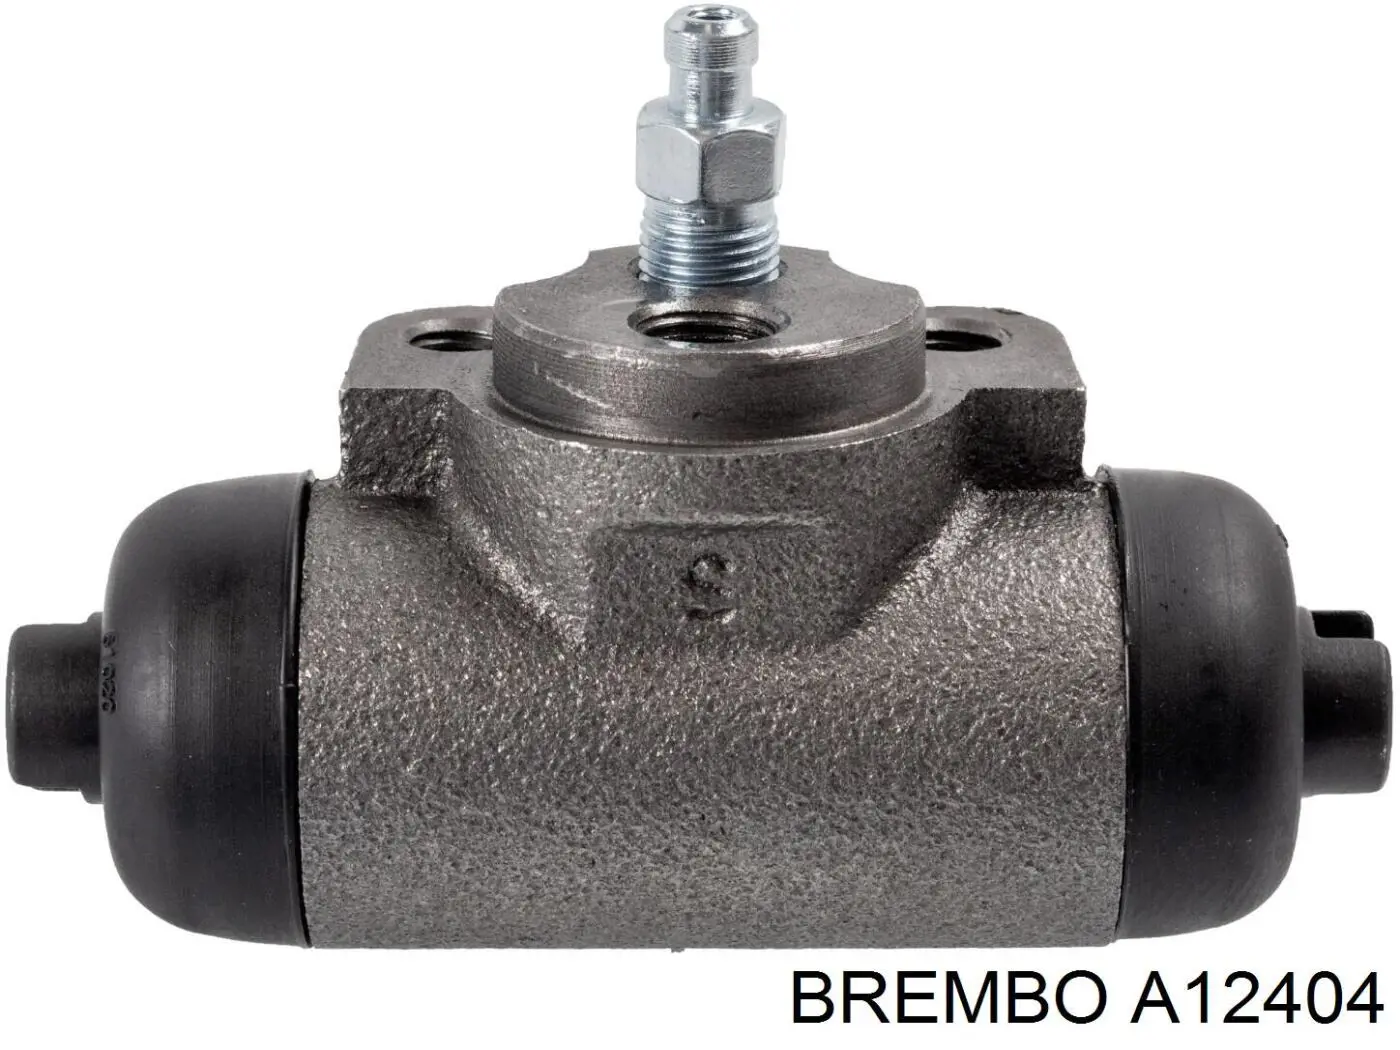 A12404 Brembo cilindro de freno de rueda trasero